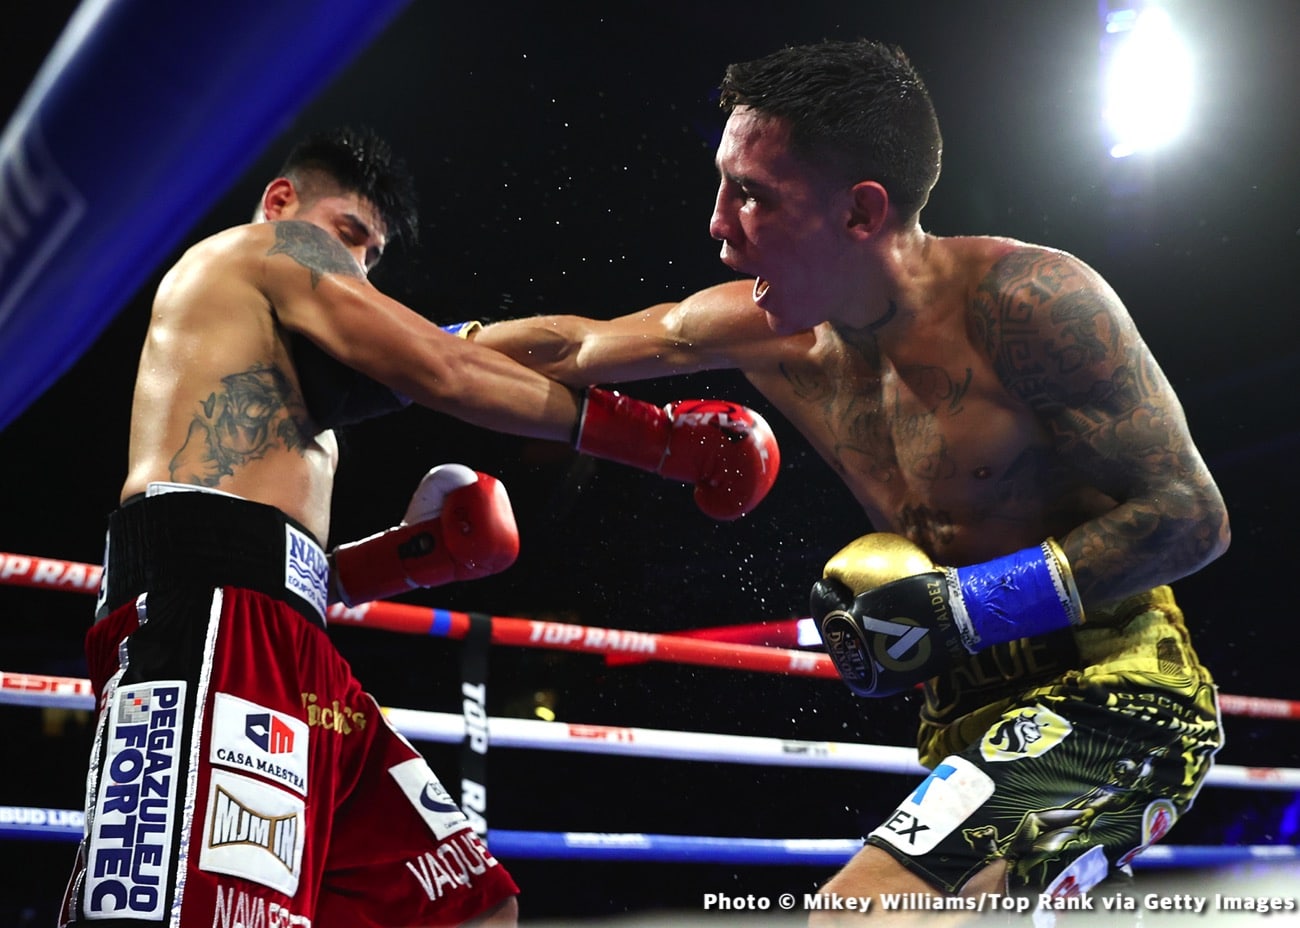 Image: Boxing results: Emanuel “Vaquero” Navarrete Defeats Oscar Valdez in a War!